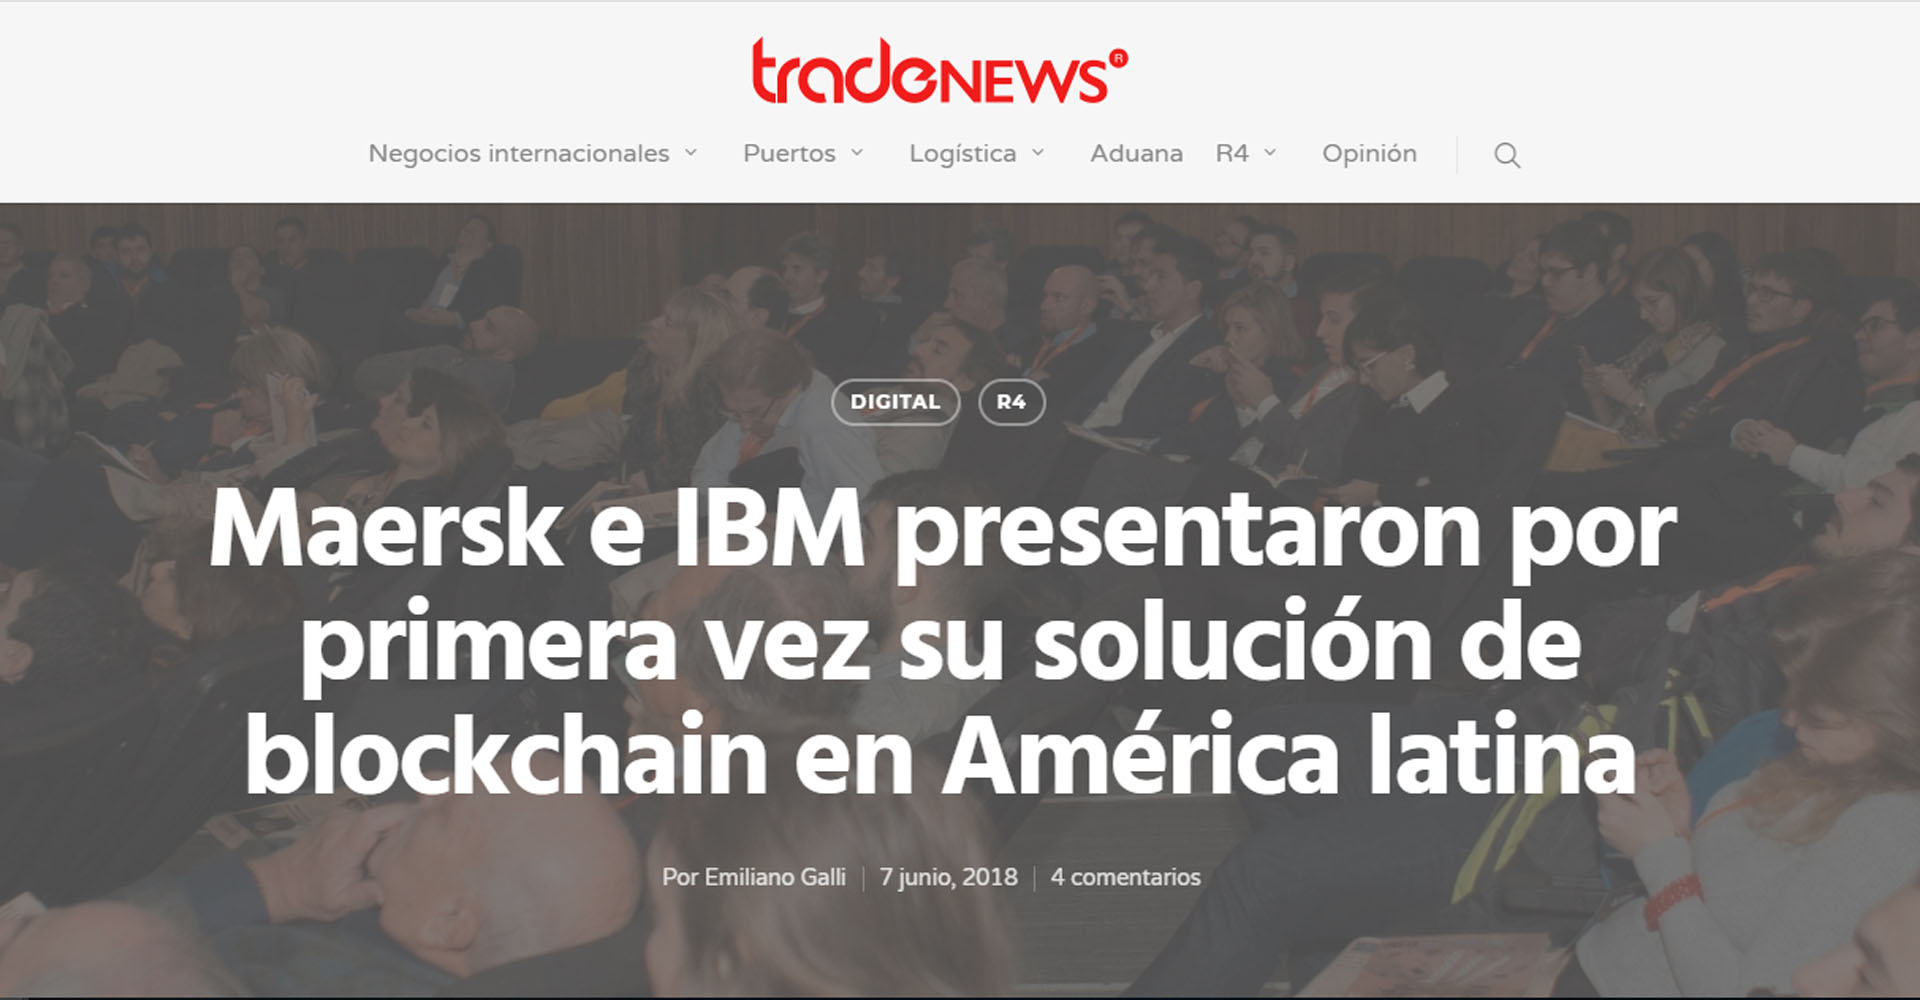 «Maersk e IBM presentaron por primera vez su solución Blockchain en América Latina».